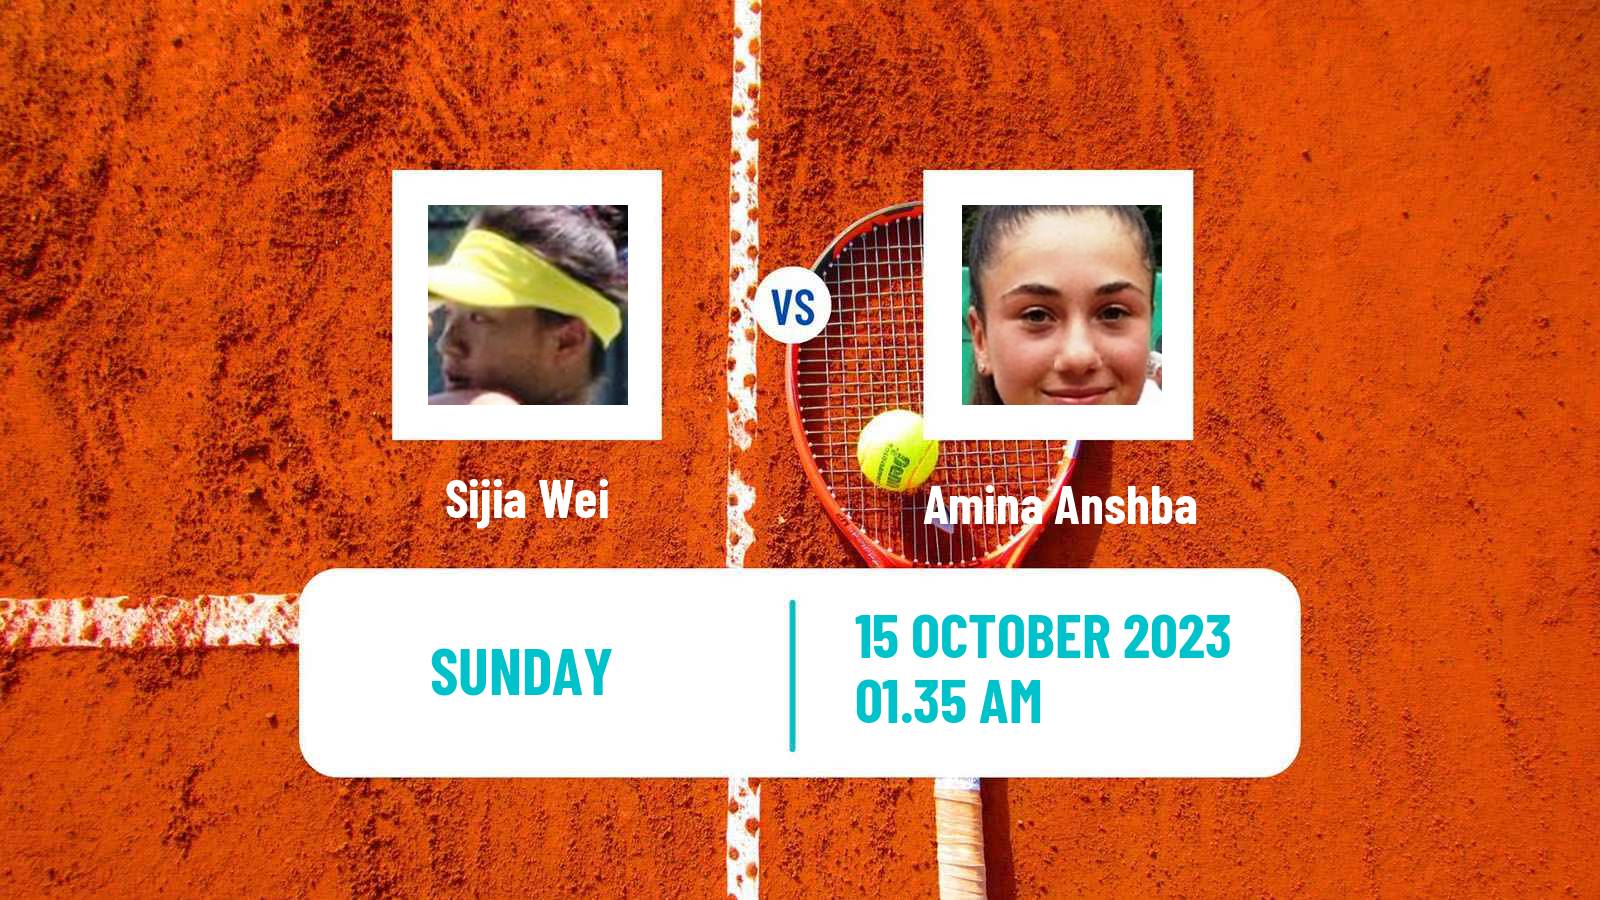 Tennis WTA Nanchang Sijia Wei - Amina Anshba